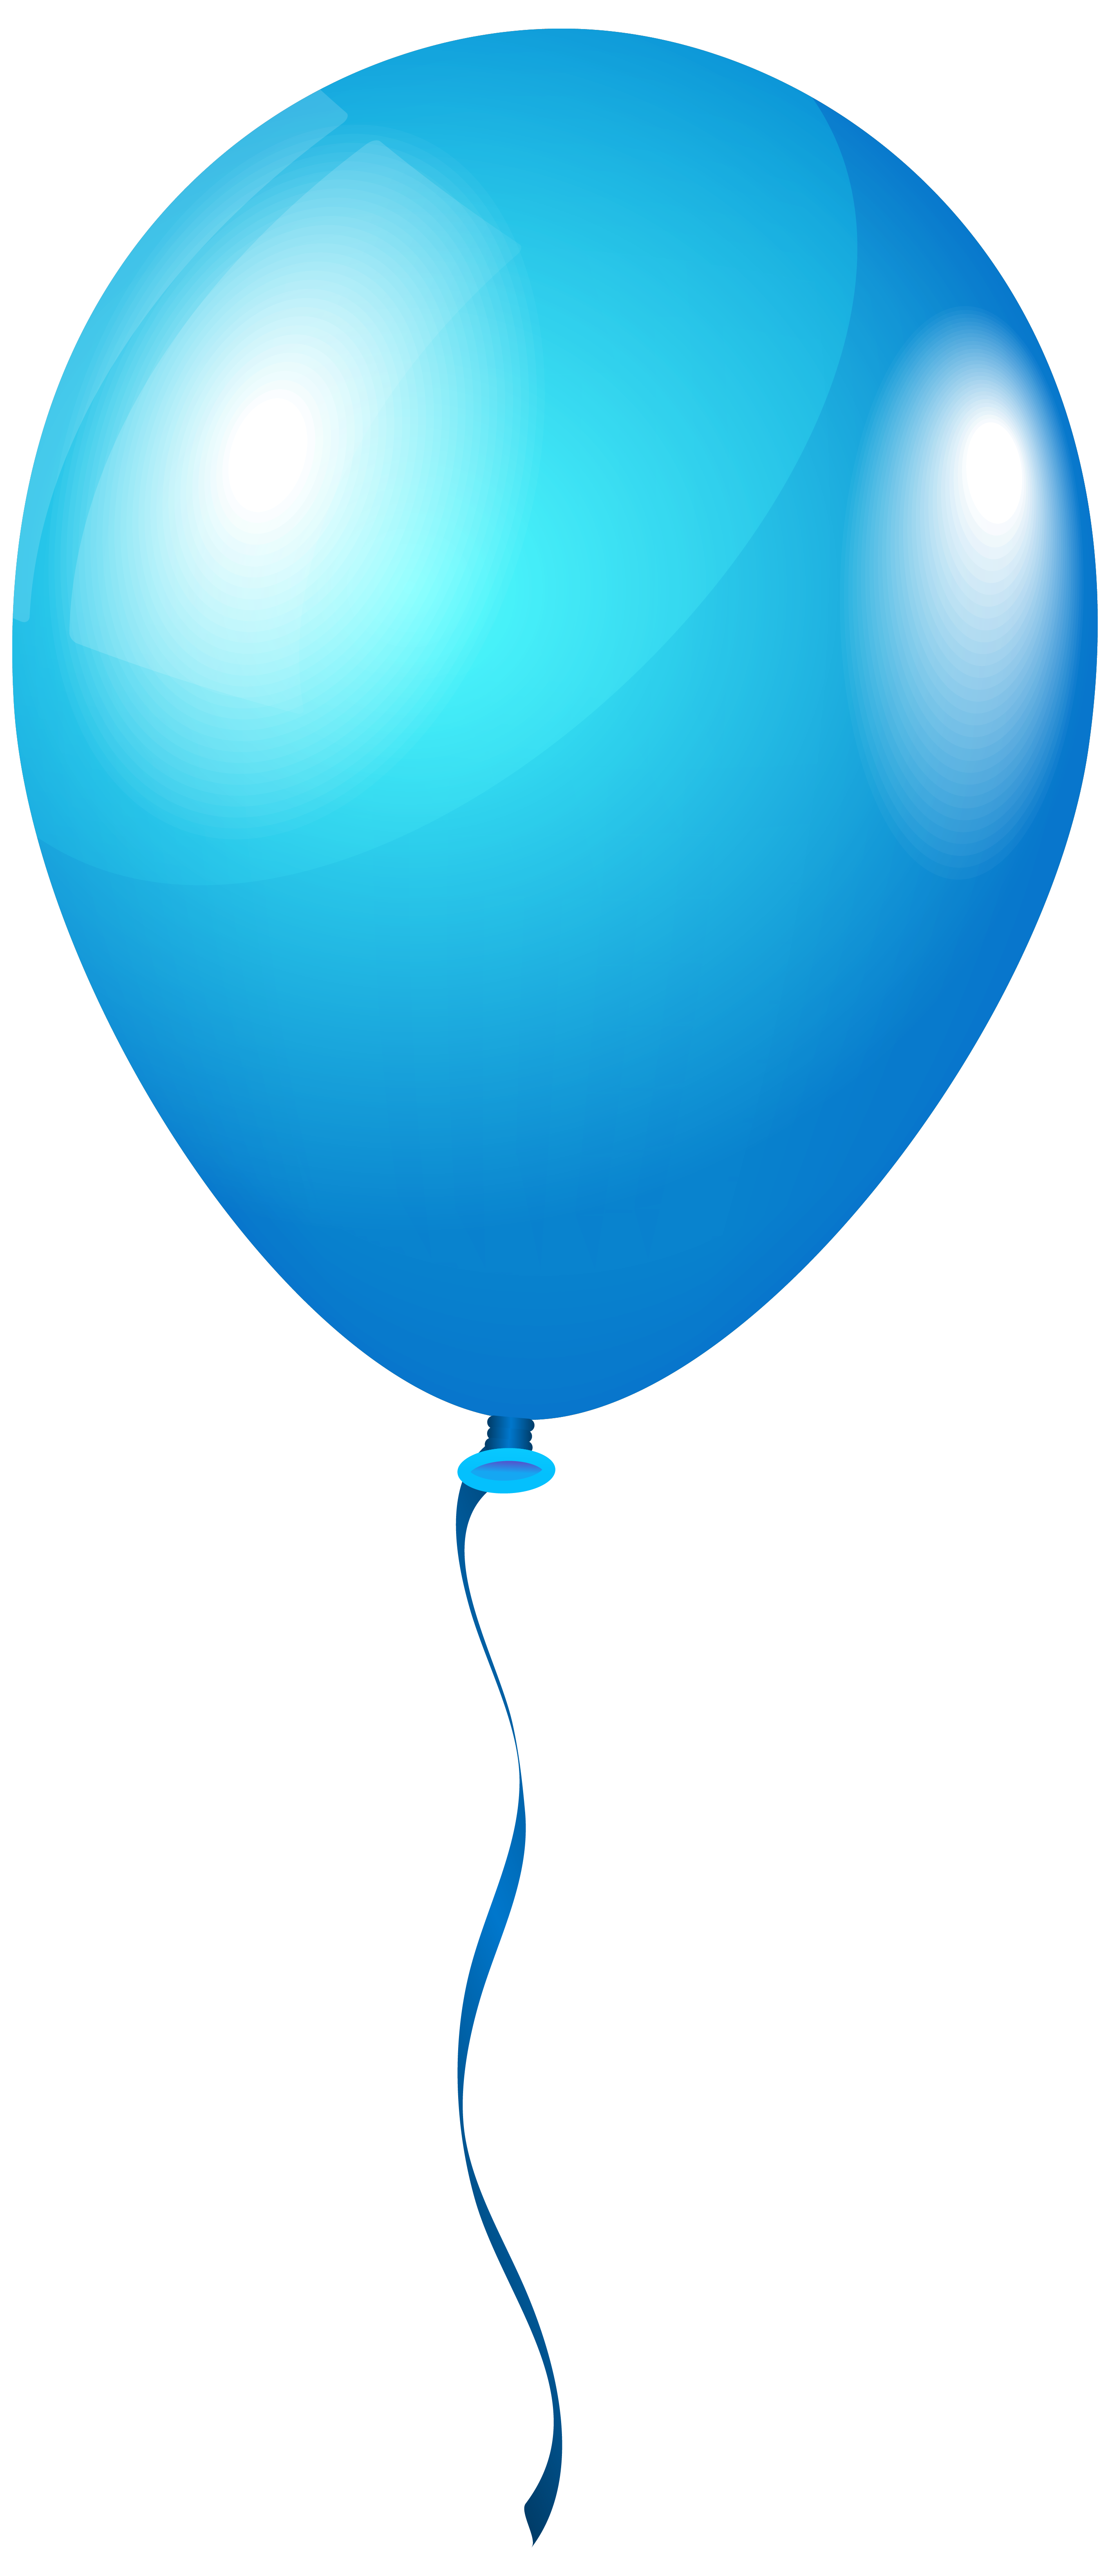 Воздушный шар PNG Image